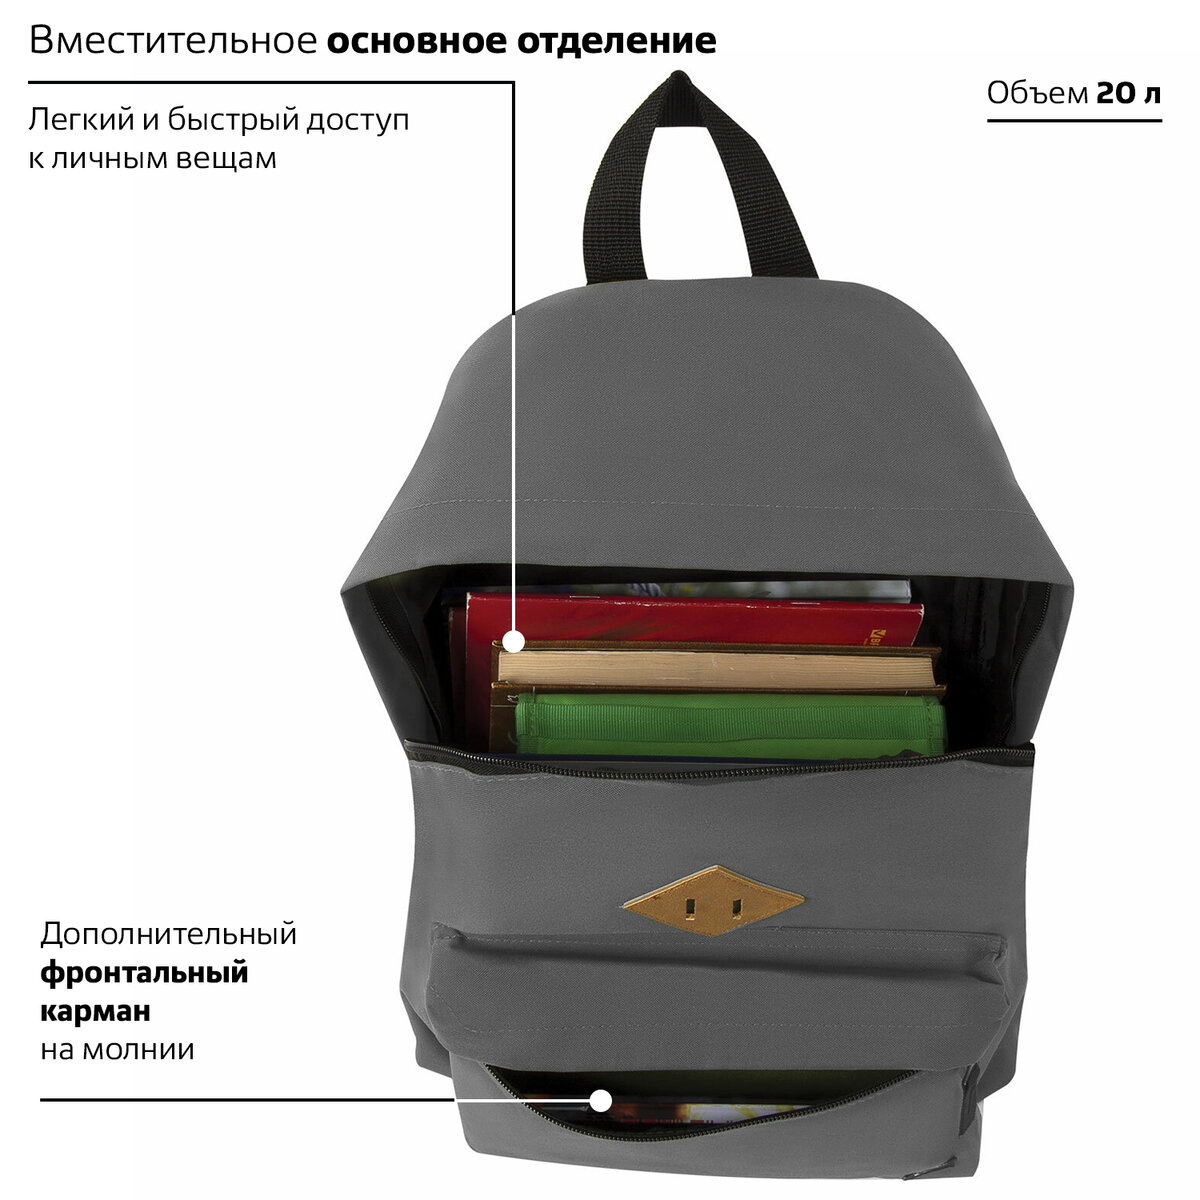 Рюкзак Brauberg универсальный сити-формат один тон серый - фото 4